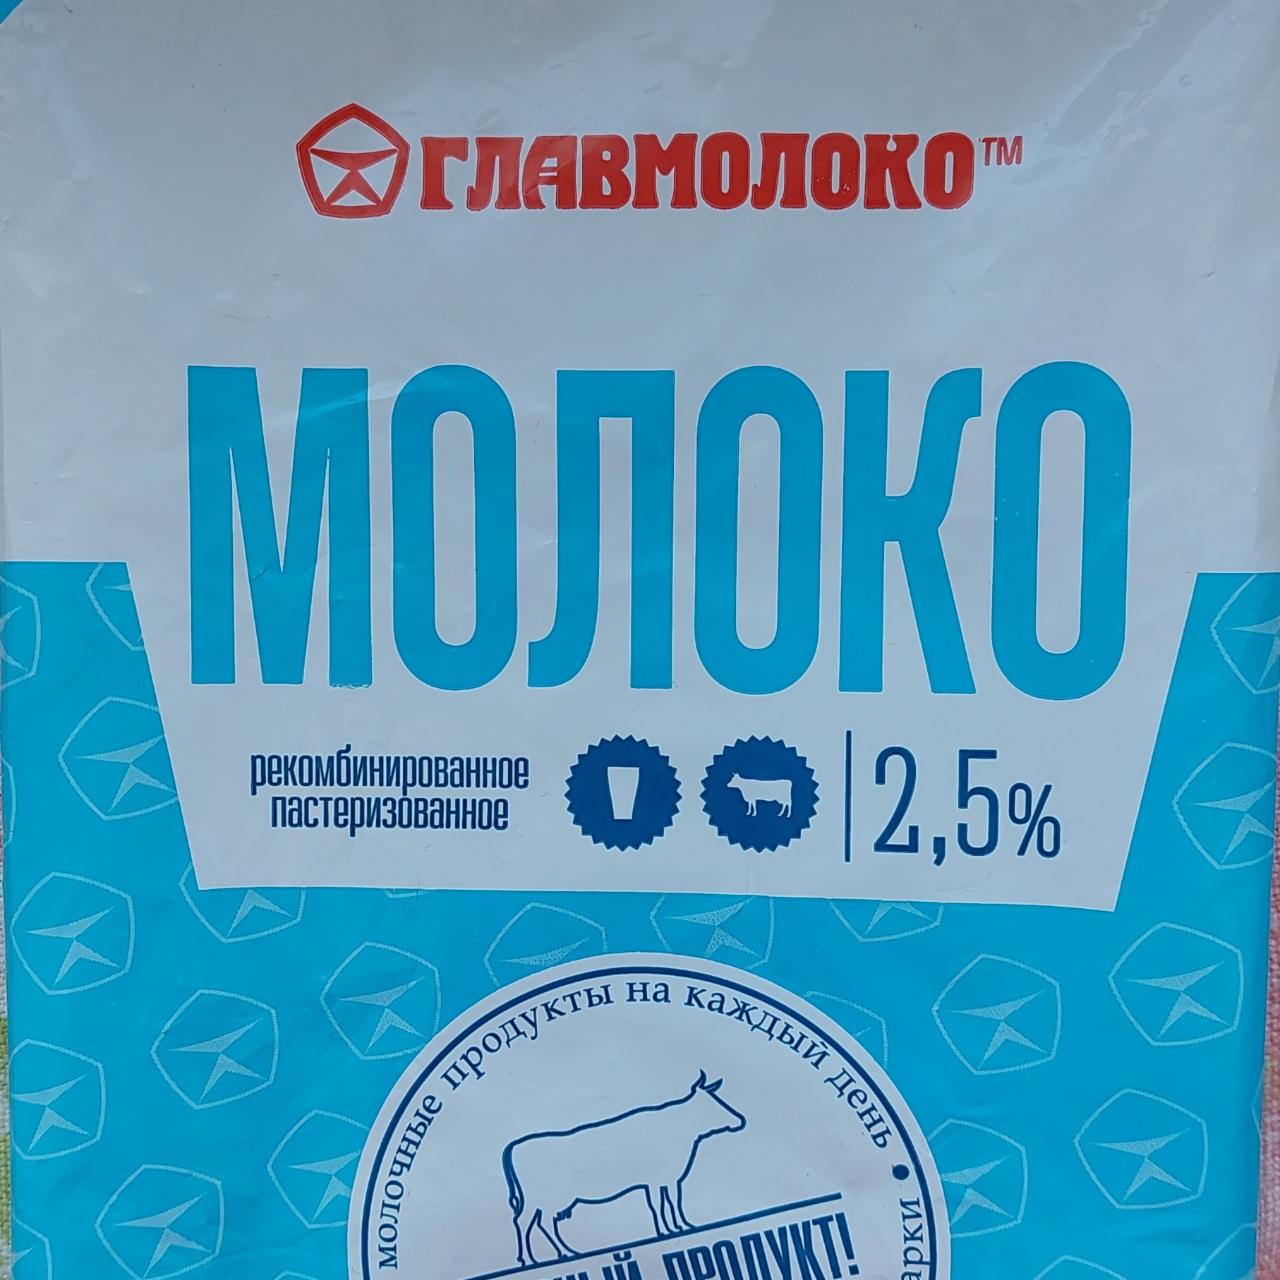 Фото - молоко рекомбенированное 2,5% жирности Главмолоко